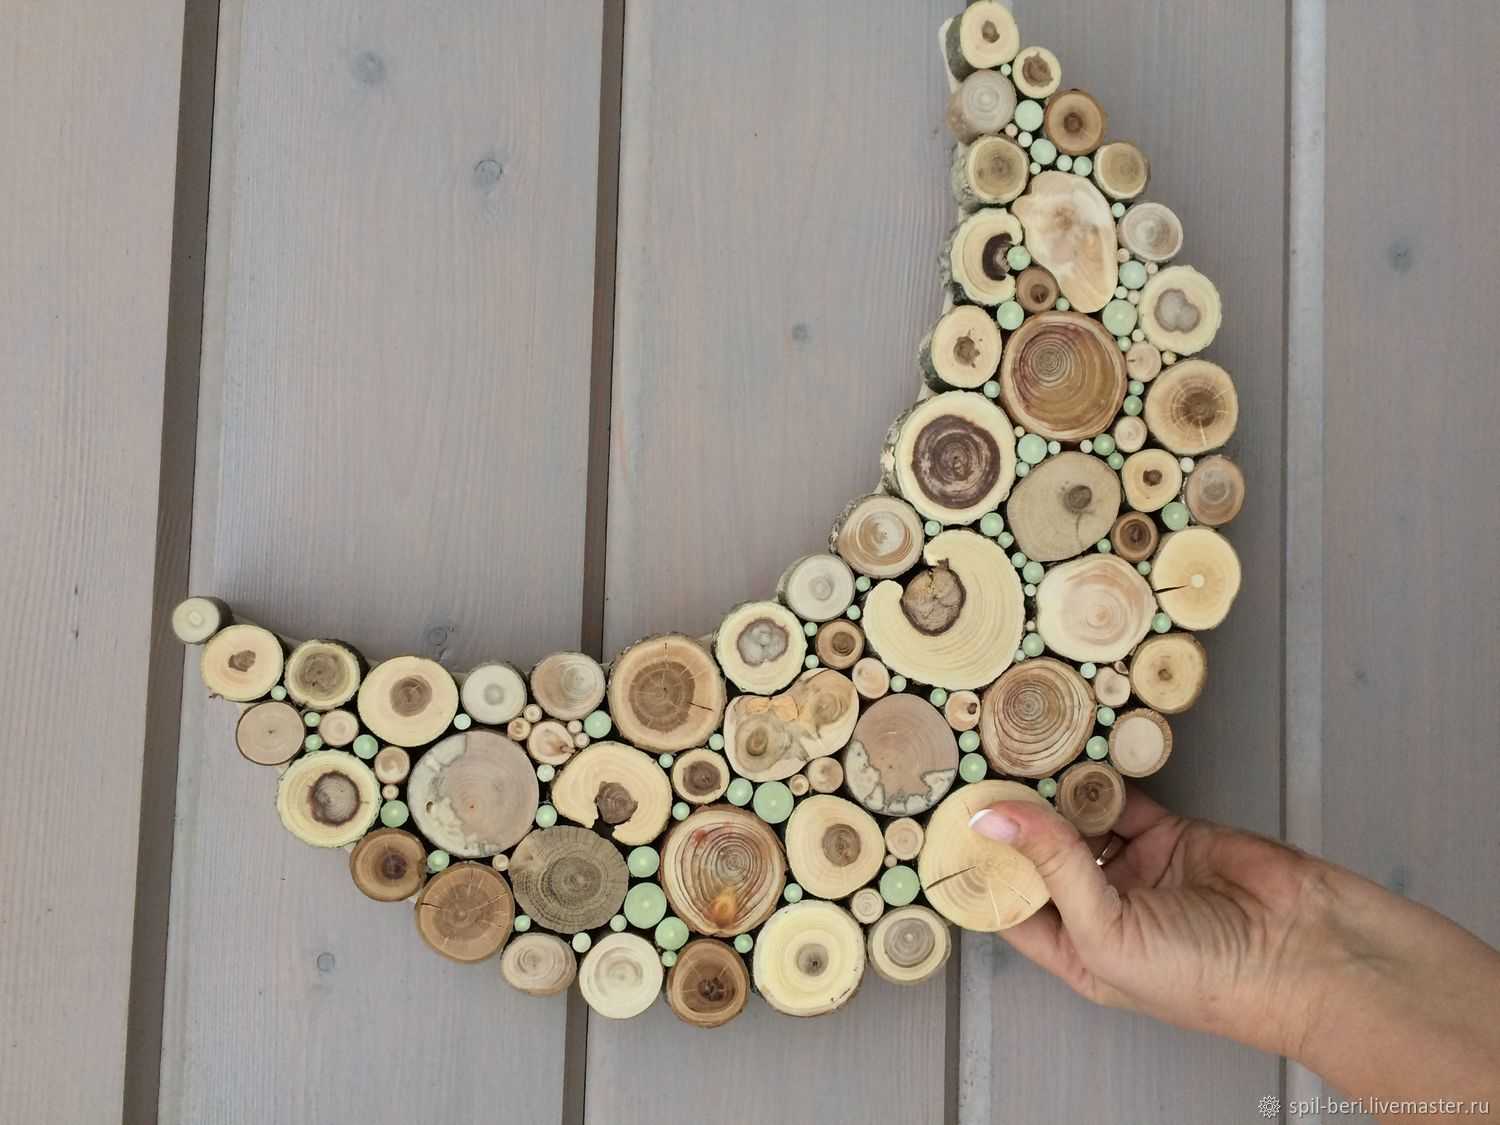 Спилы дерева для интерьера, сделанные своими руками